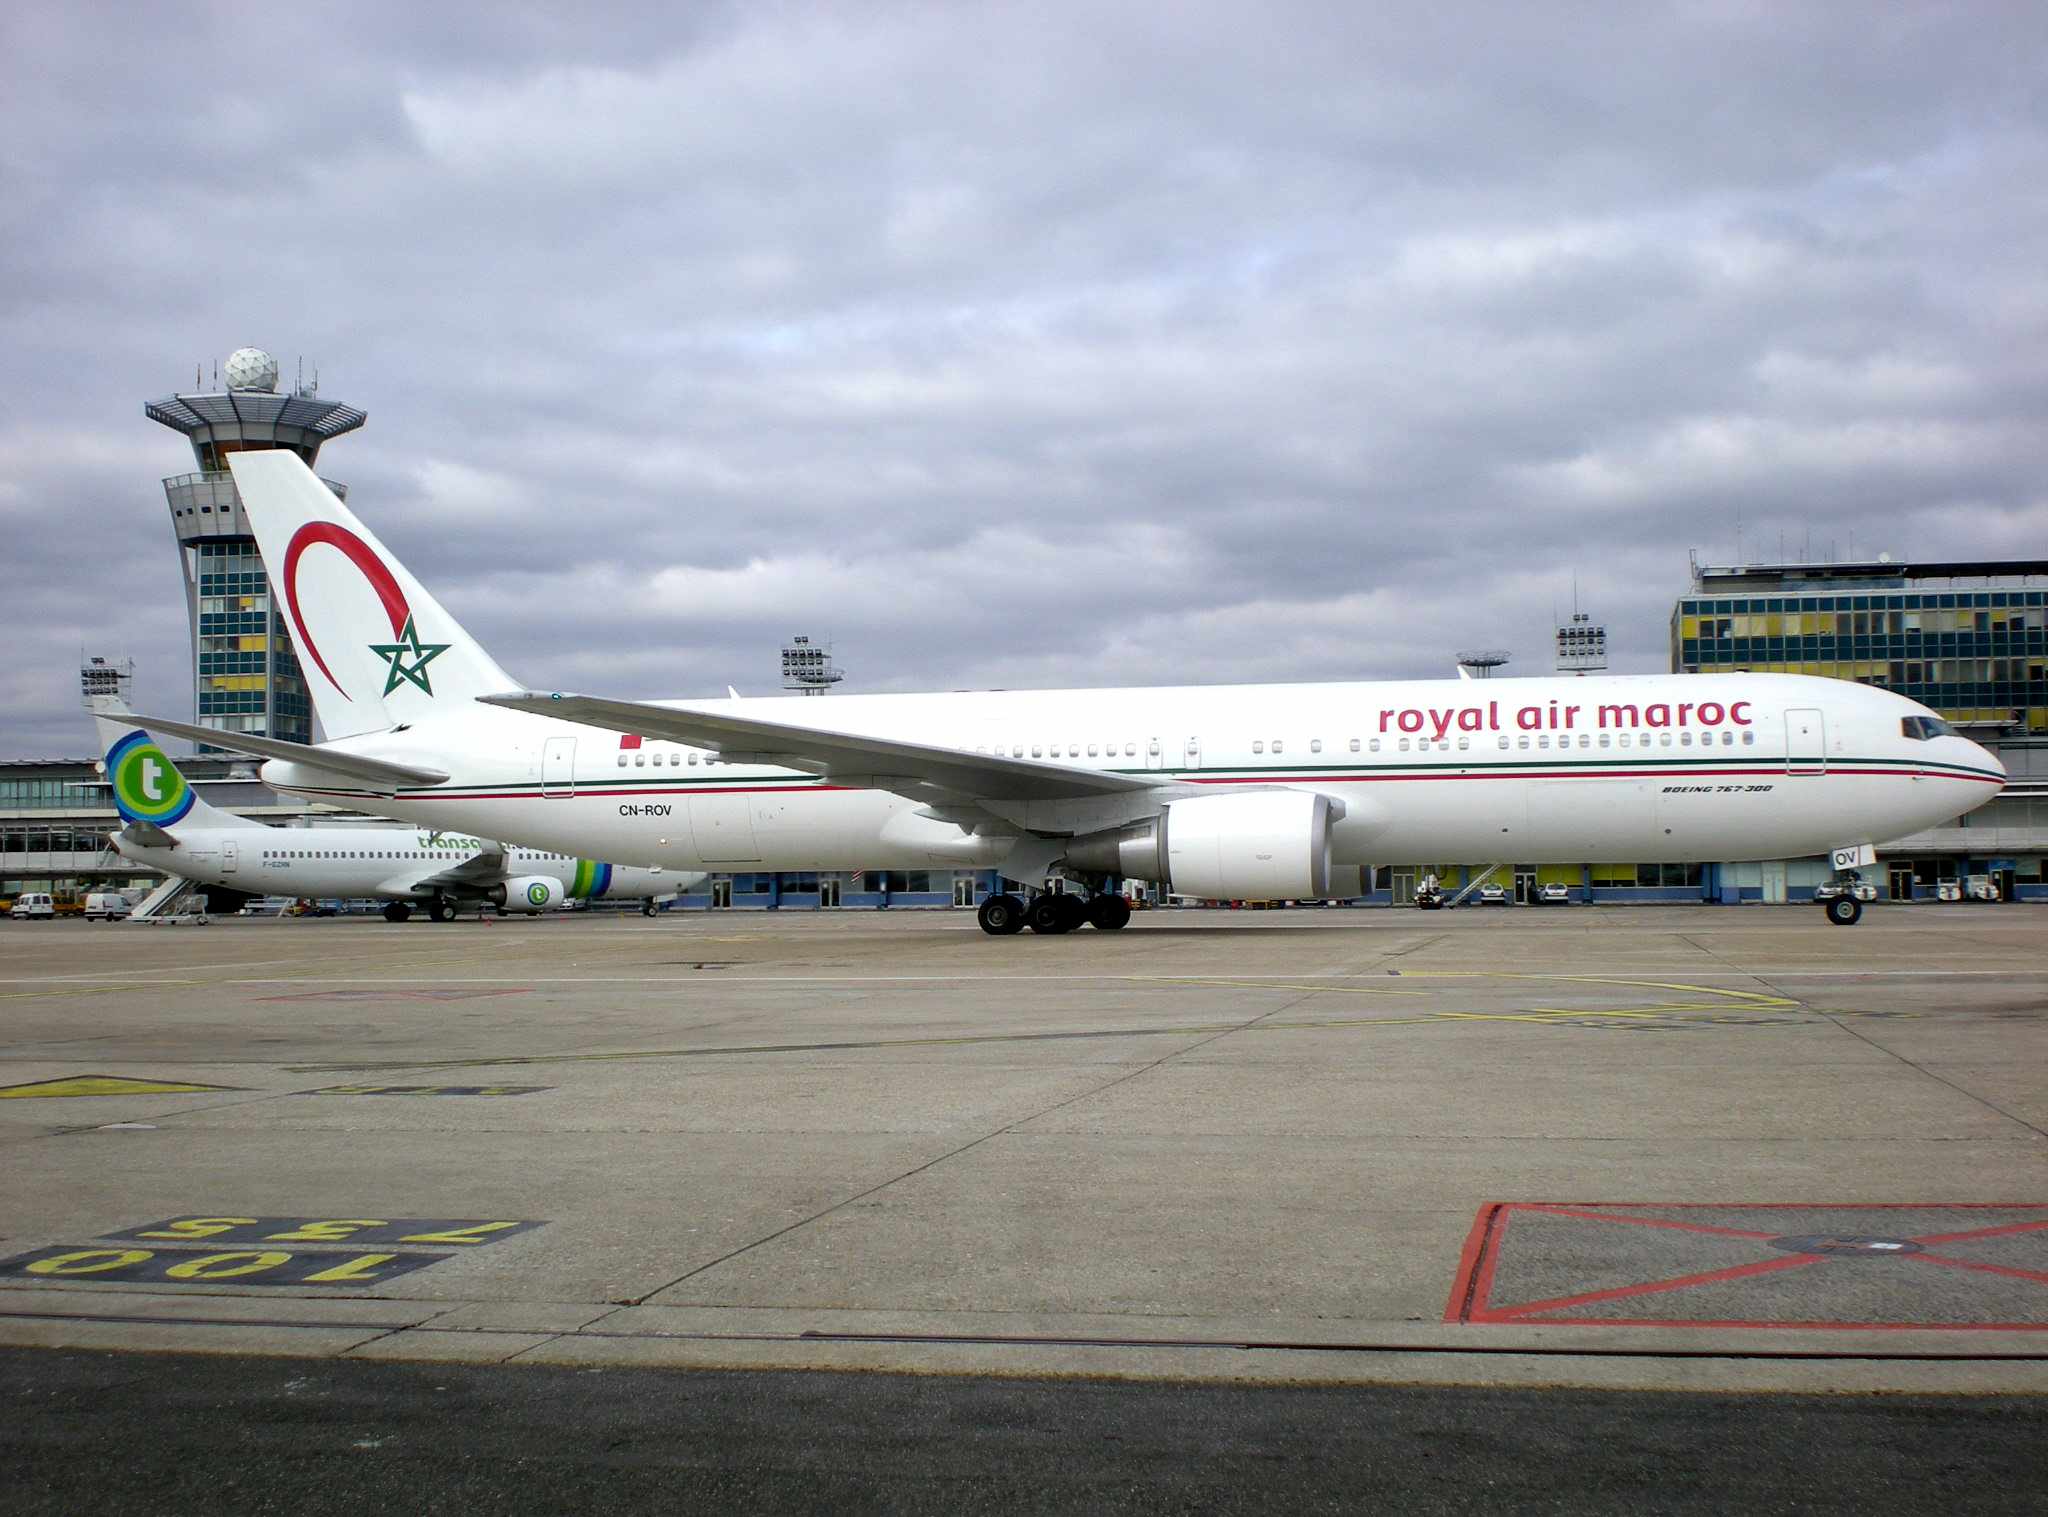 Royal air maroc | book flights and save